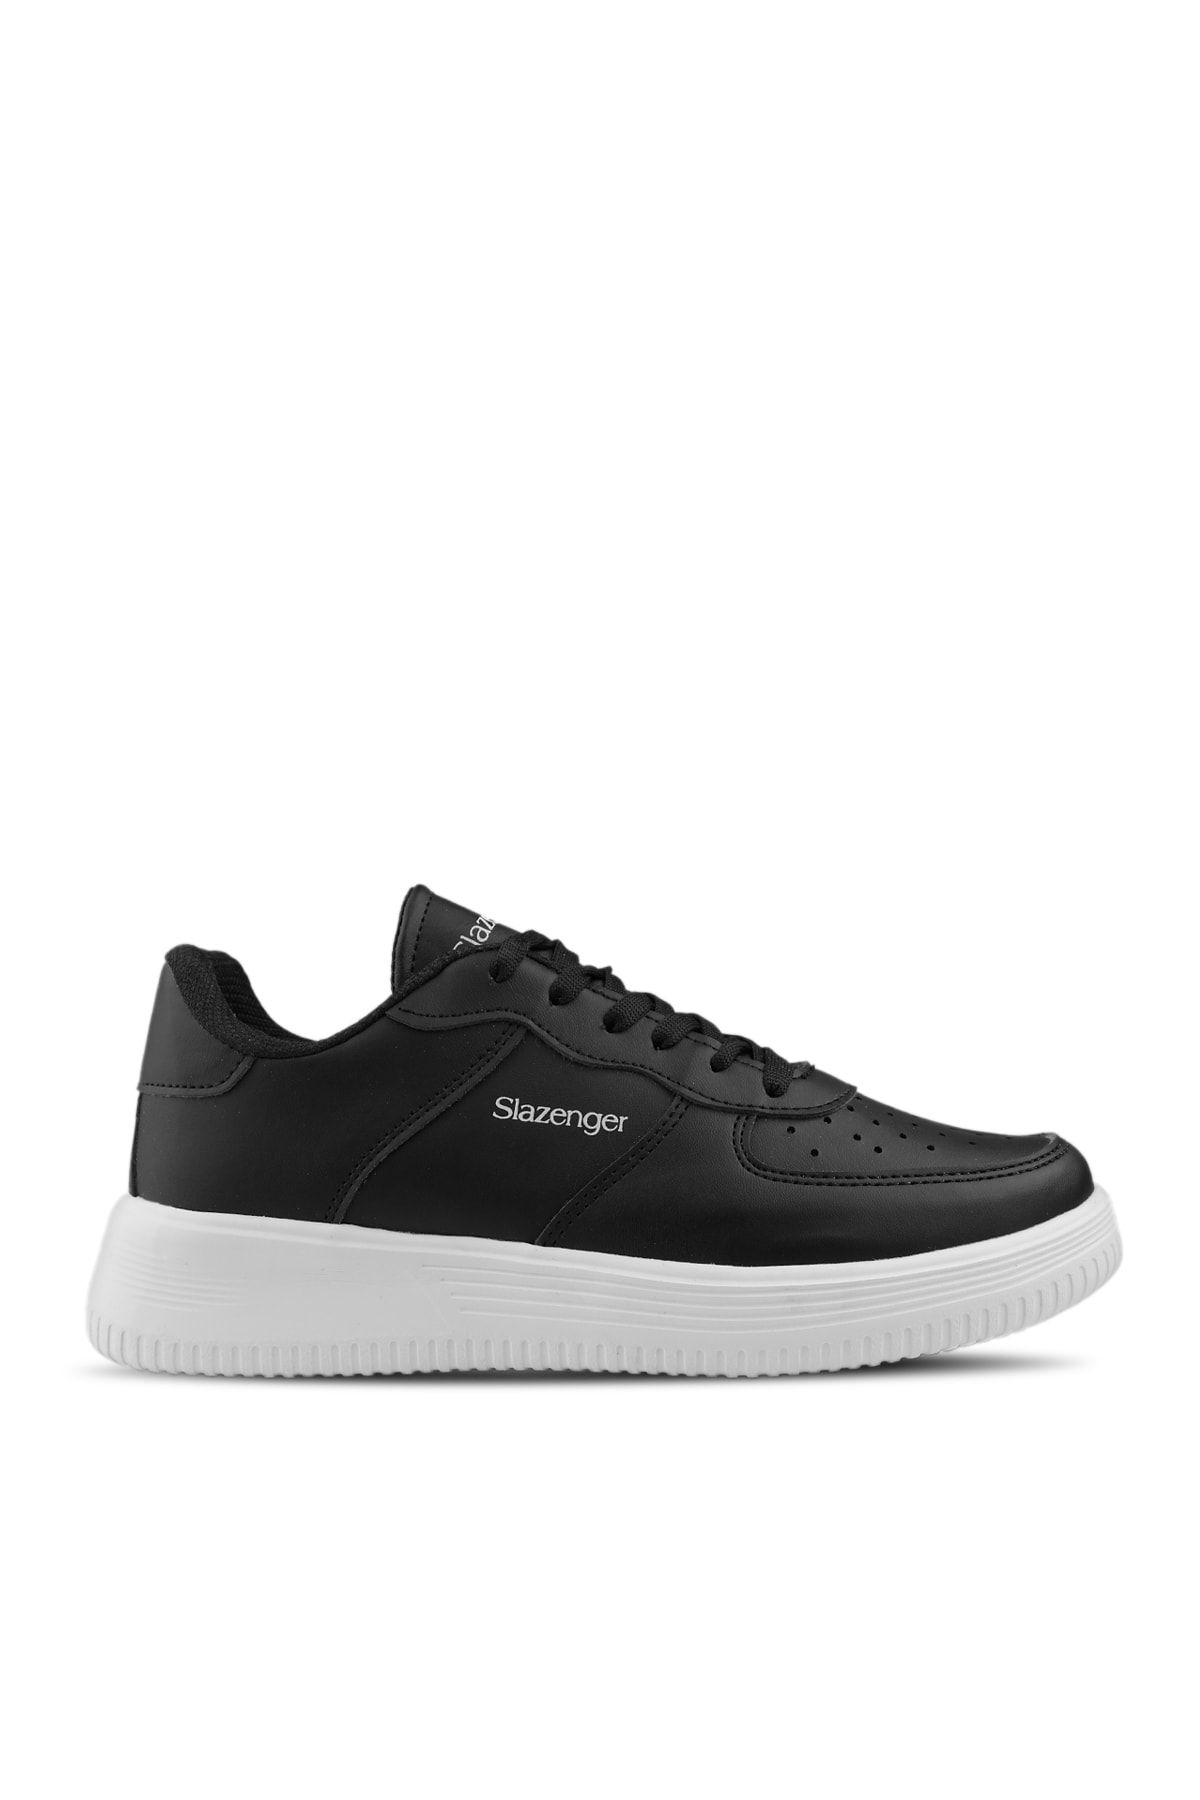 Slazenger Ekua Sneaker Kadın Ayakkabı Siyah / Beyaz